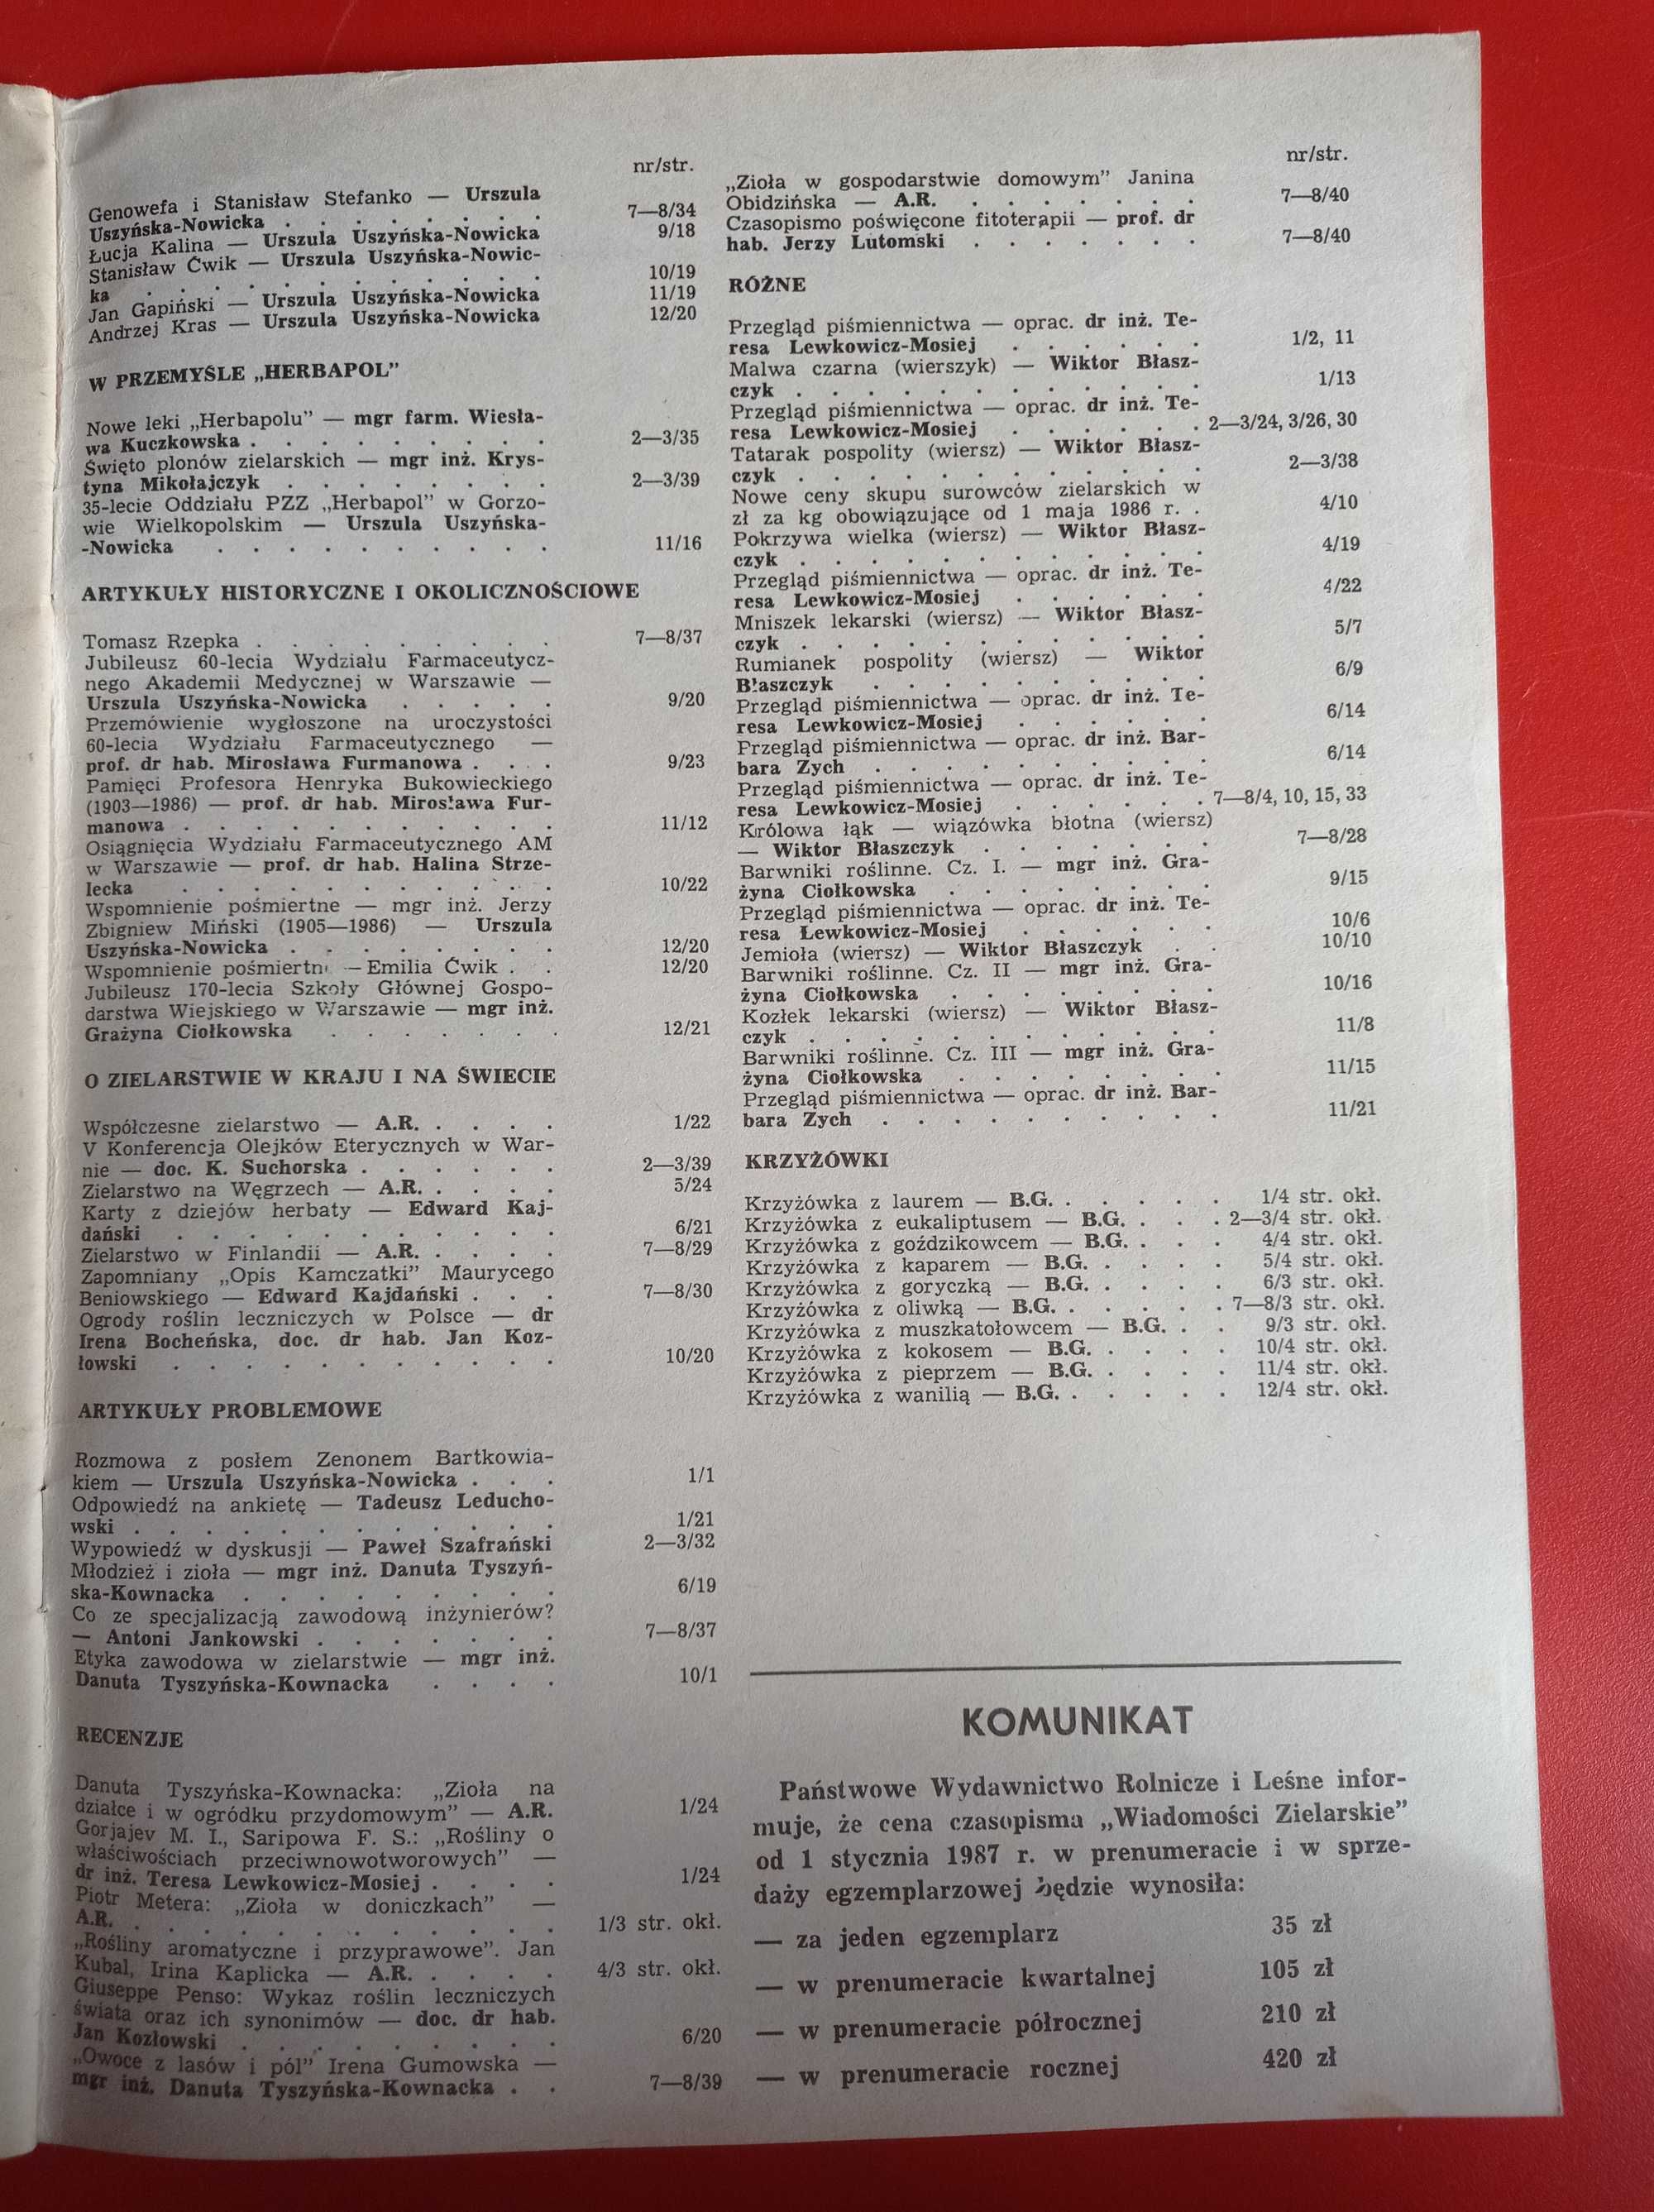 Wiadomości zielarskie nr 5/1986, maj 1986